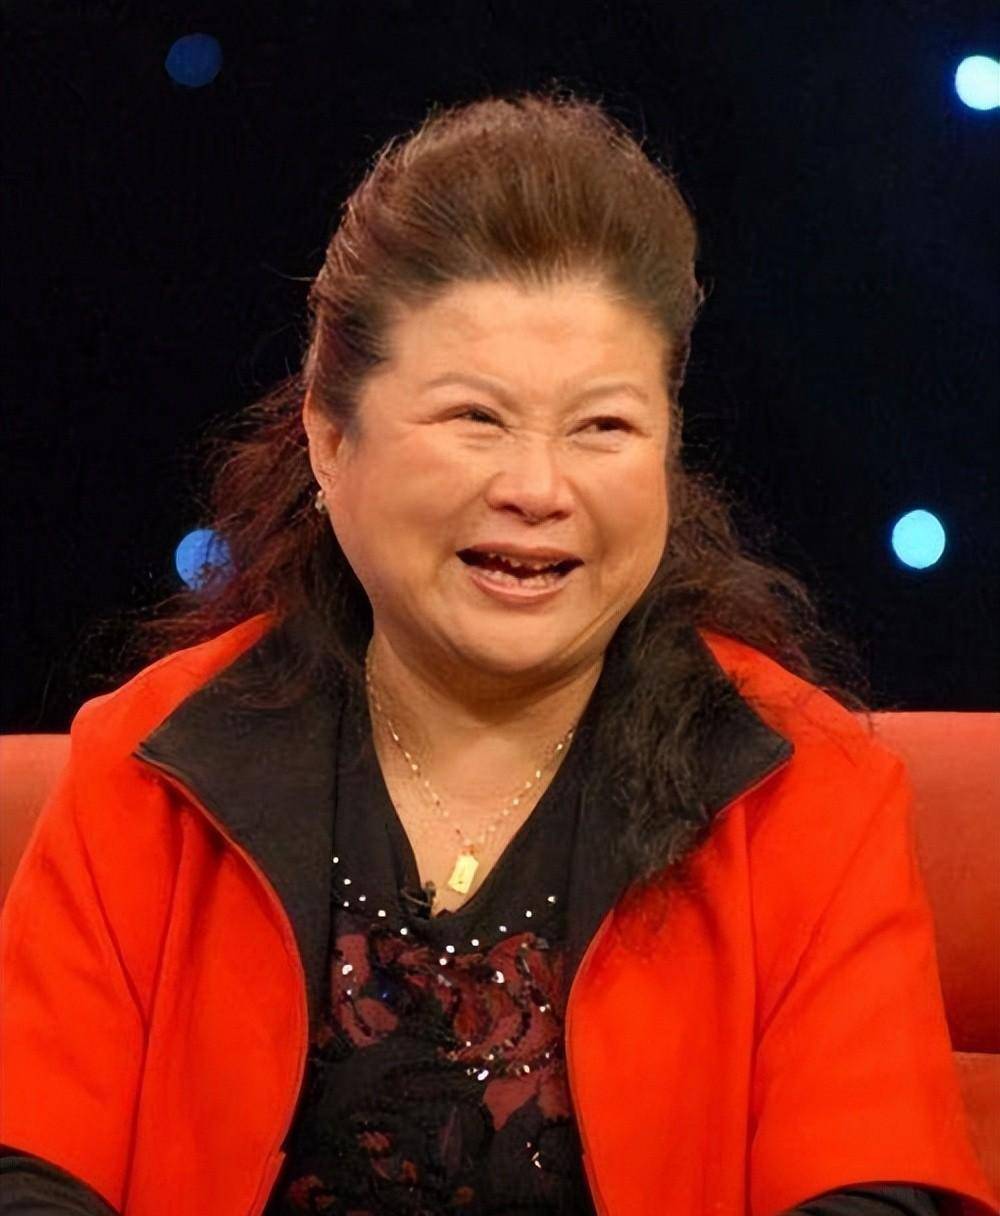 72岁的李静罕露面,近照显得年轻富态,你喜欢她饰演的大辣椒吗?